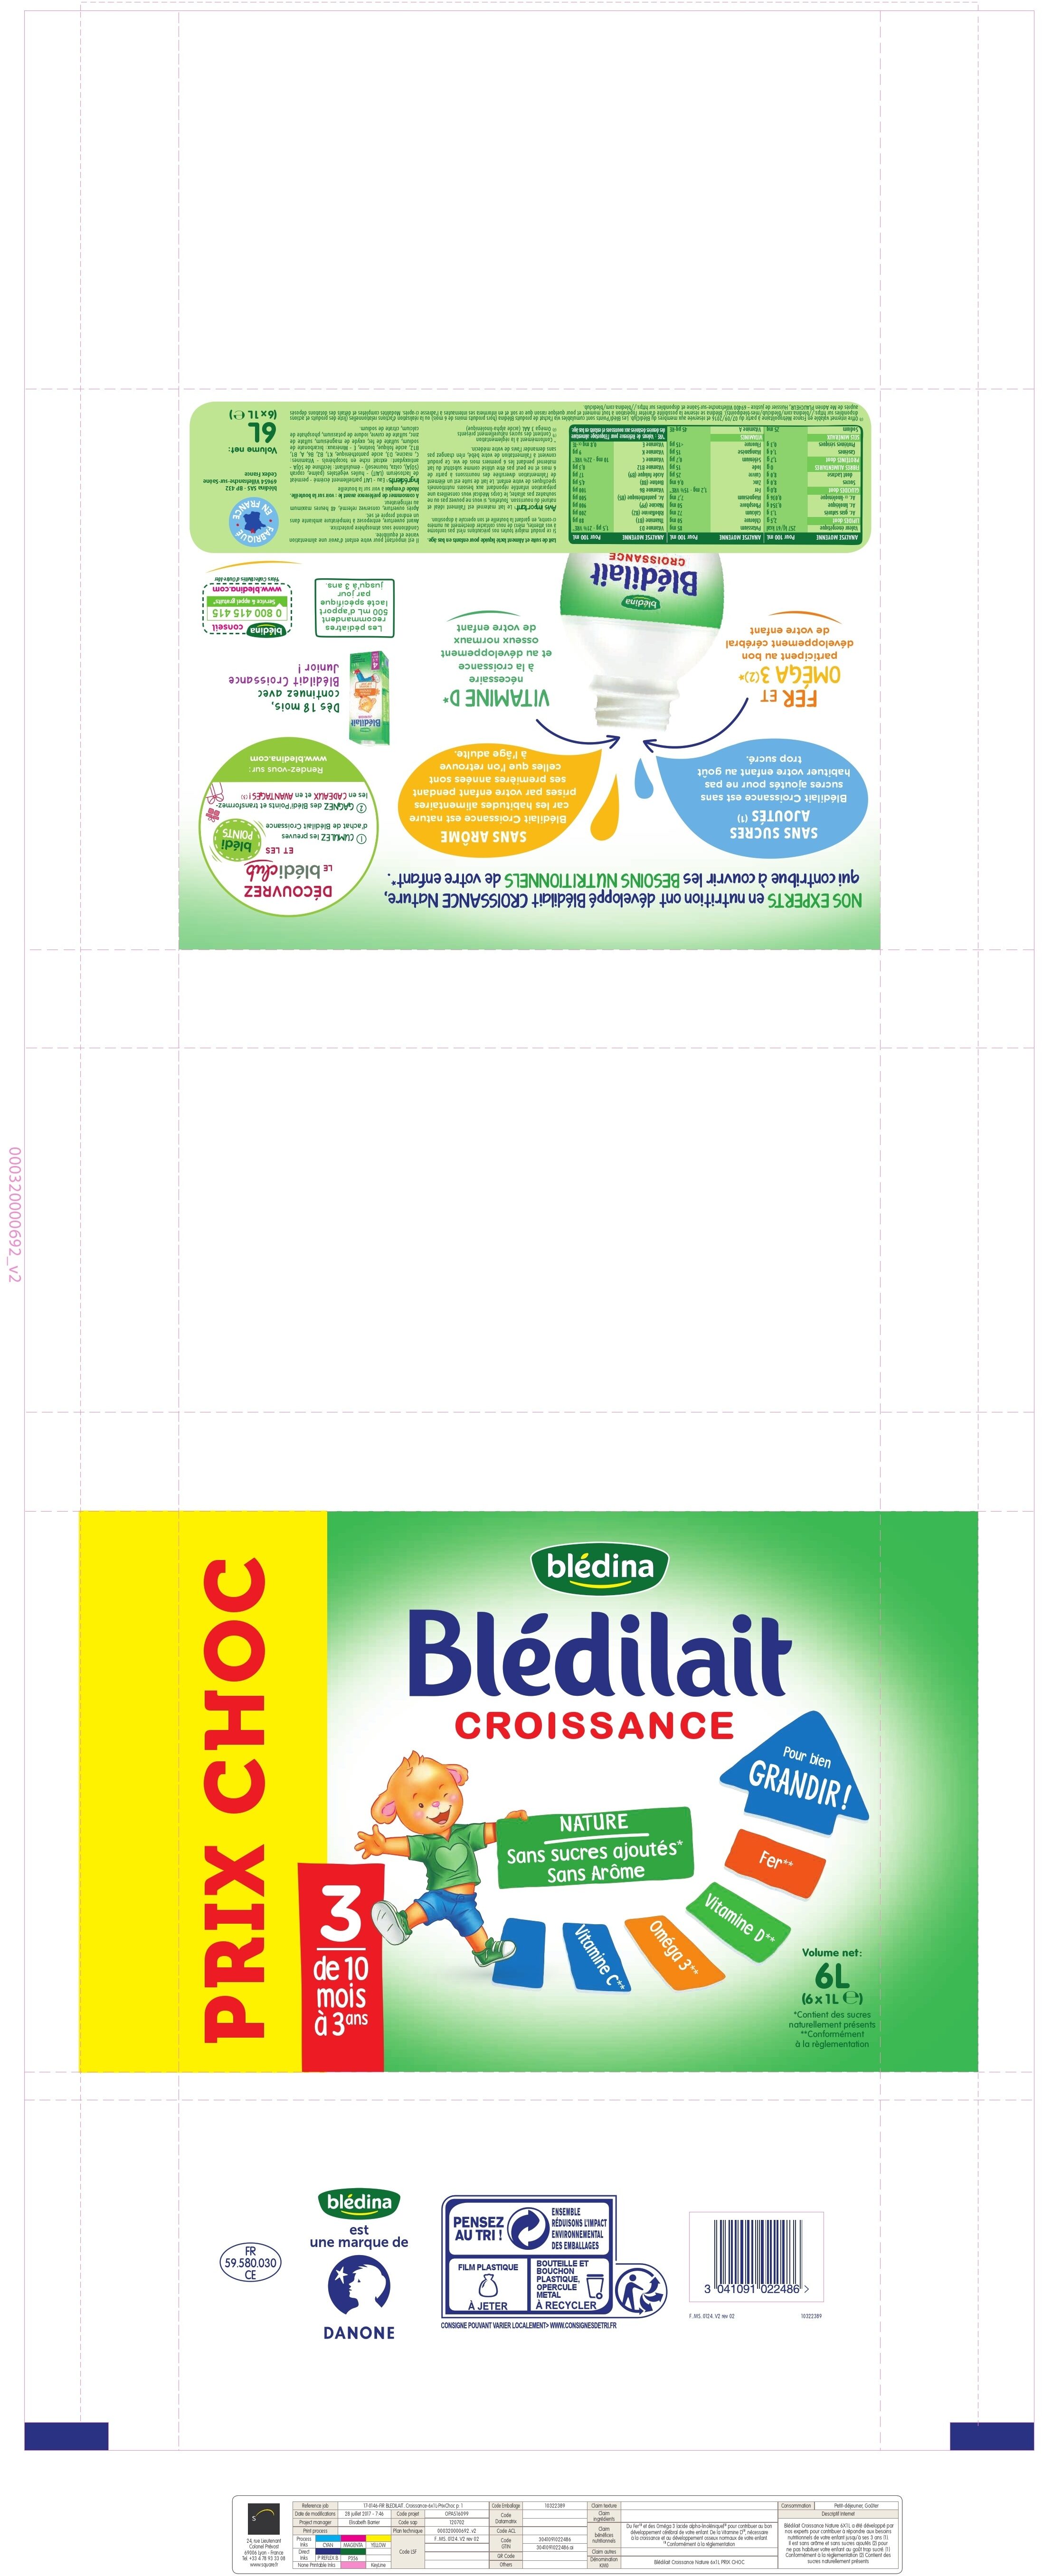 BLEDILAIT CROISSANCE PRIX CHOC 6x1L de 10 mois à 36 mois - Produit